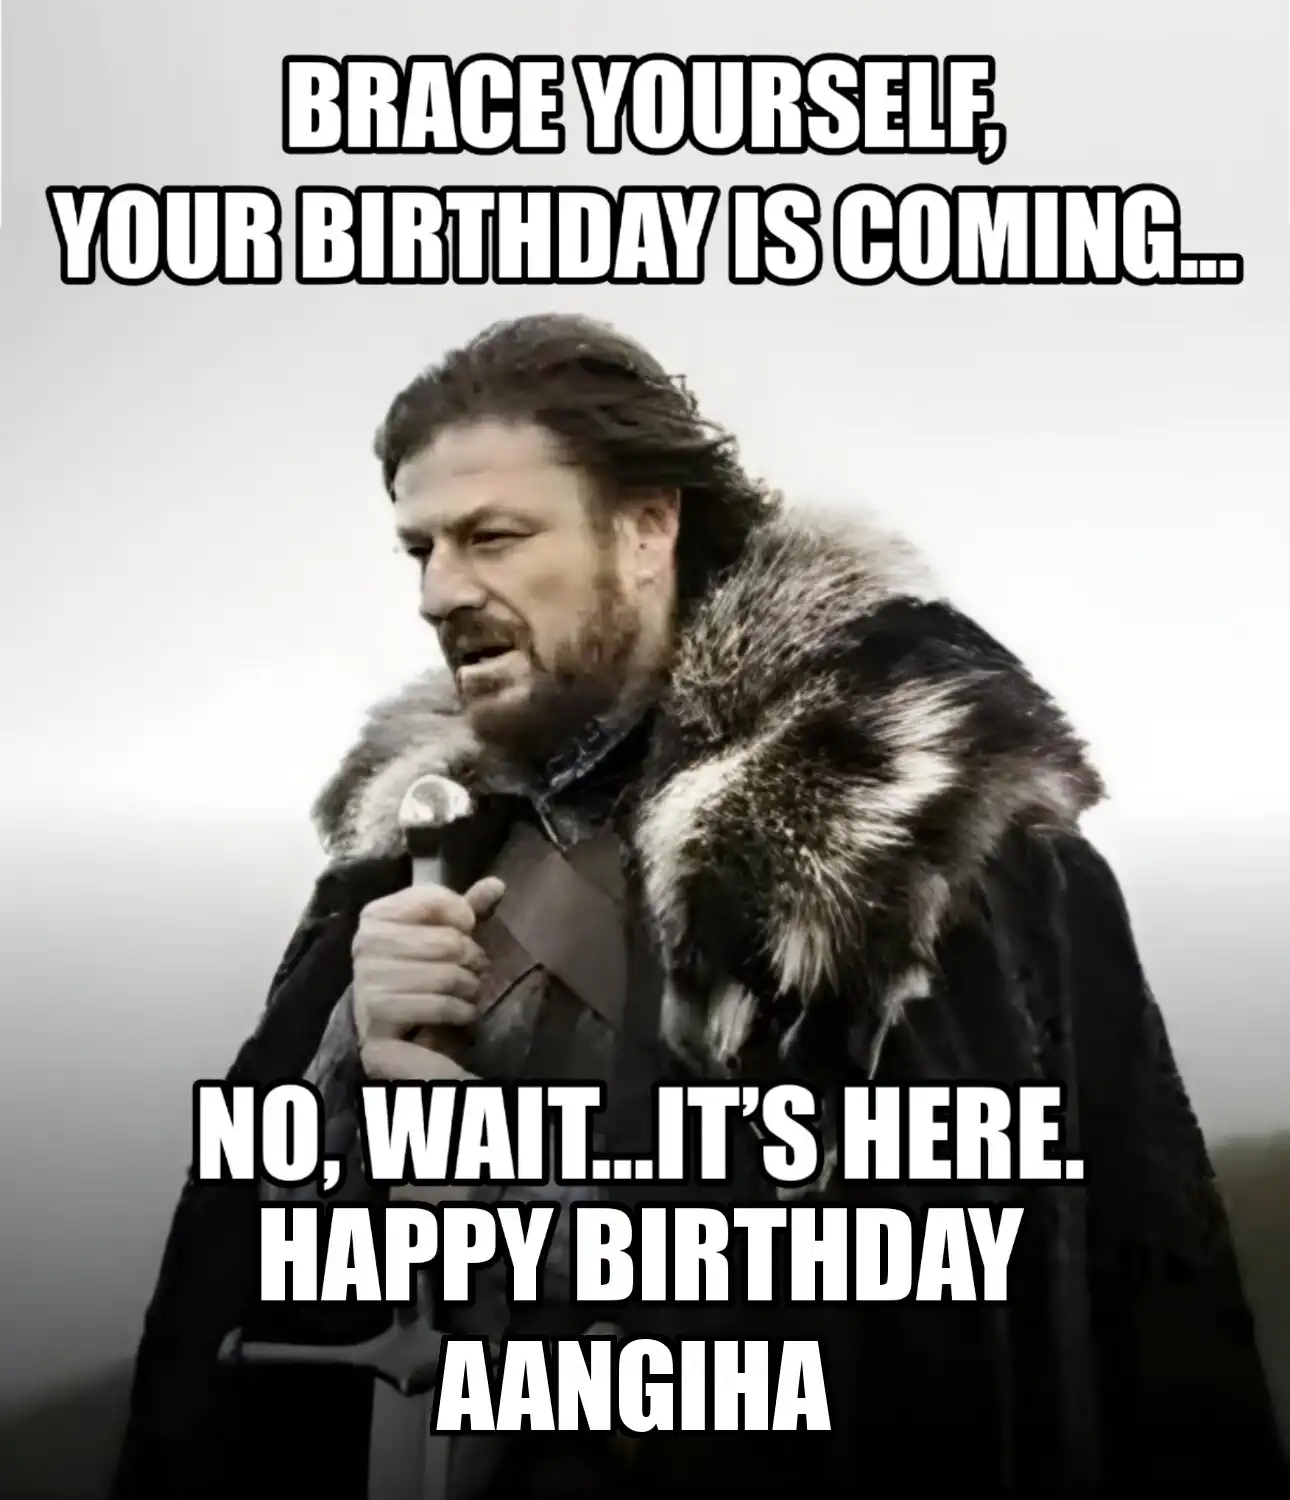 Happy Birthday Aangiha Brace Yourself Your Birthday Is Coming Meme